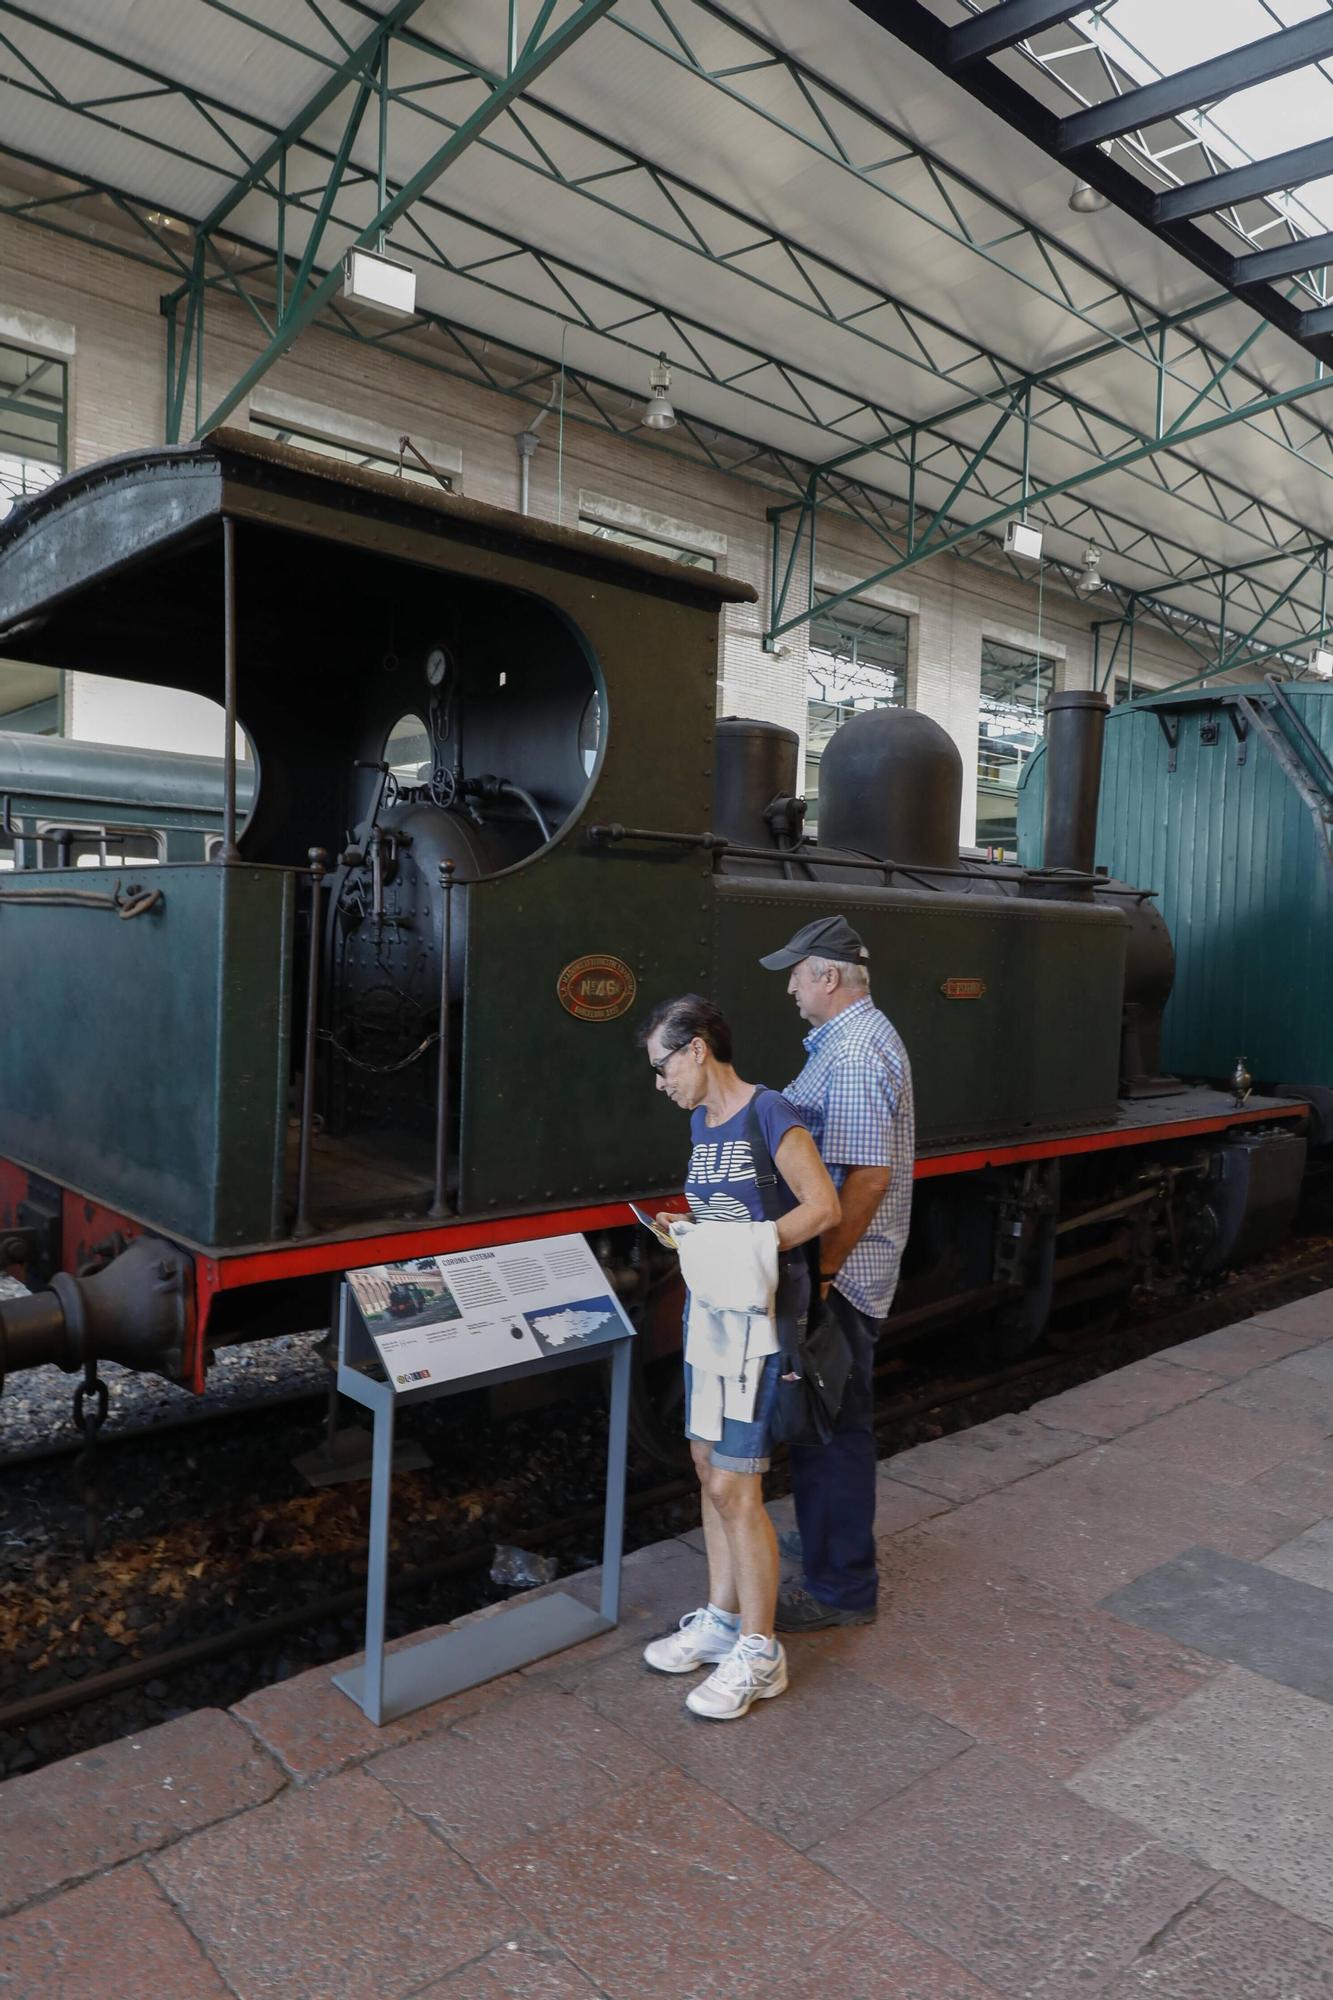 Locomotoras históricas del Museo del Ferrocarril de Asturias